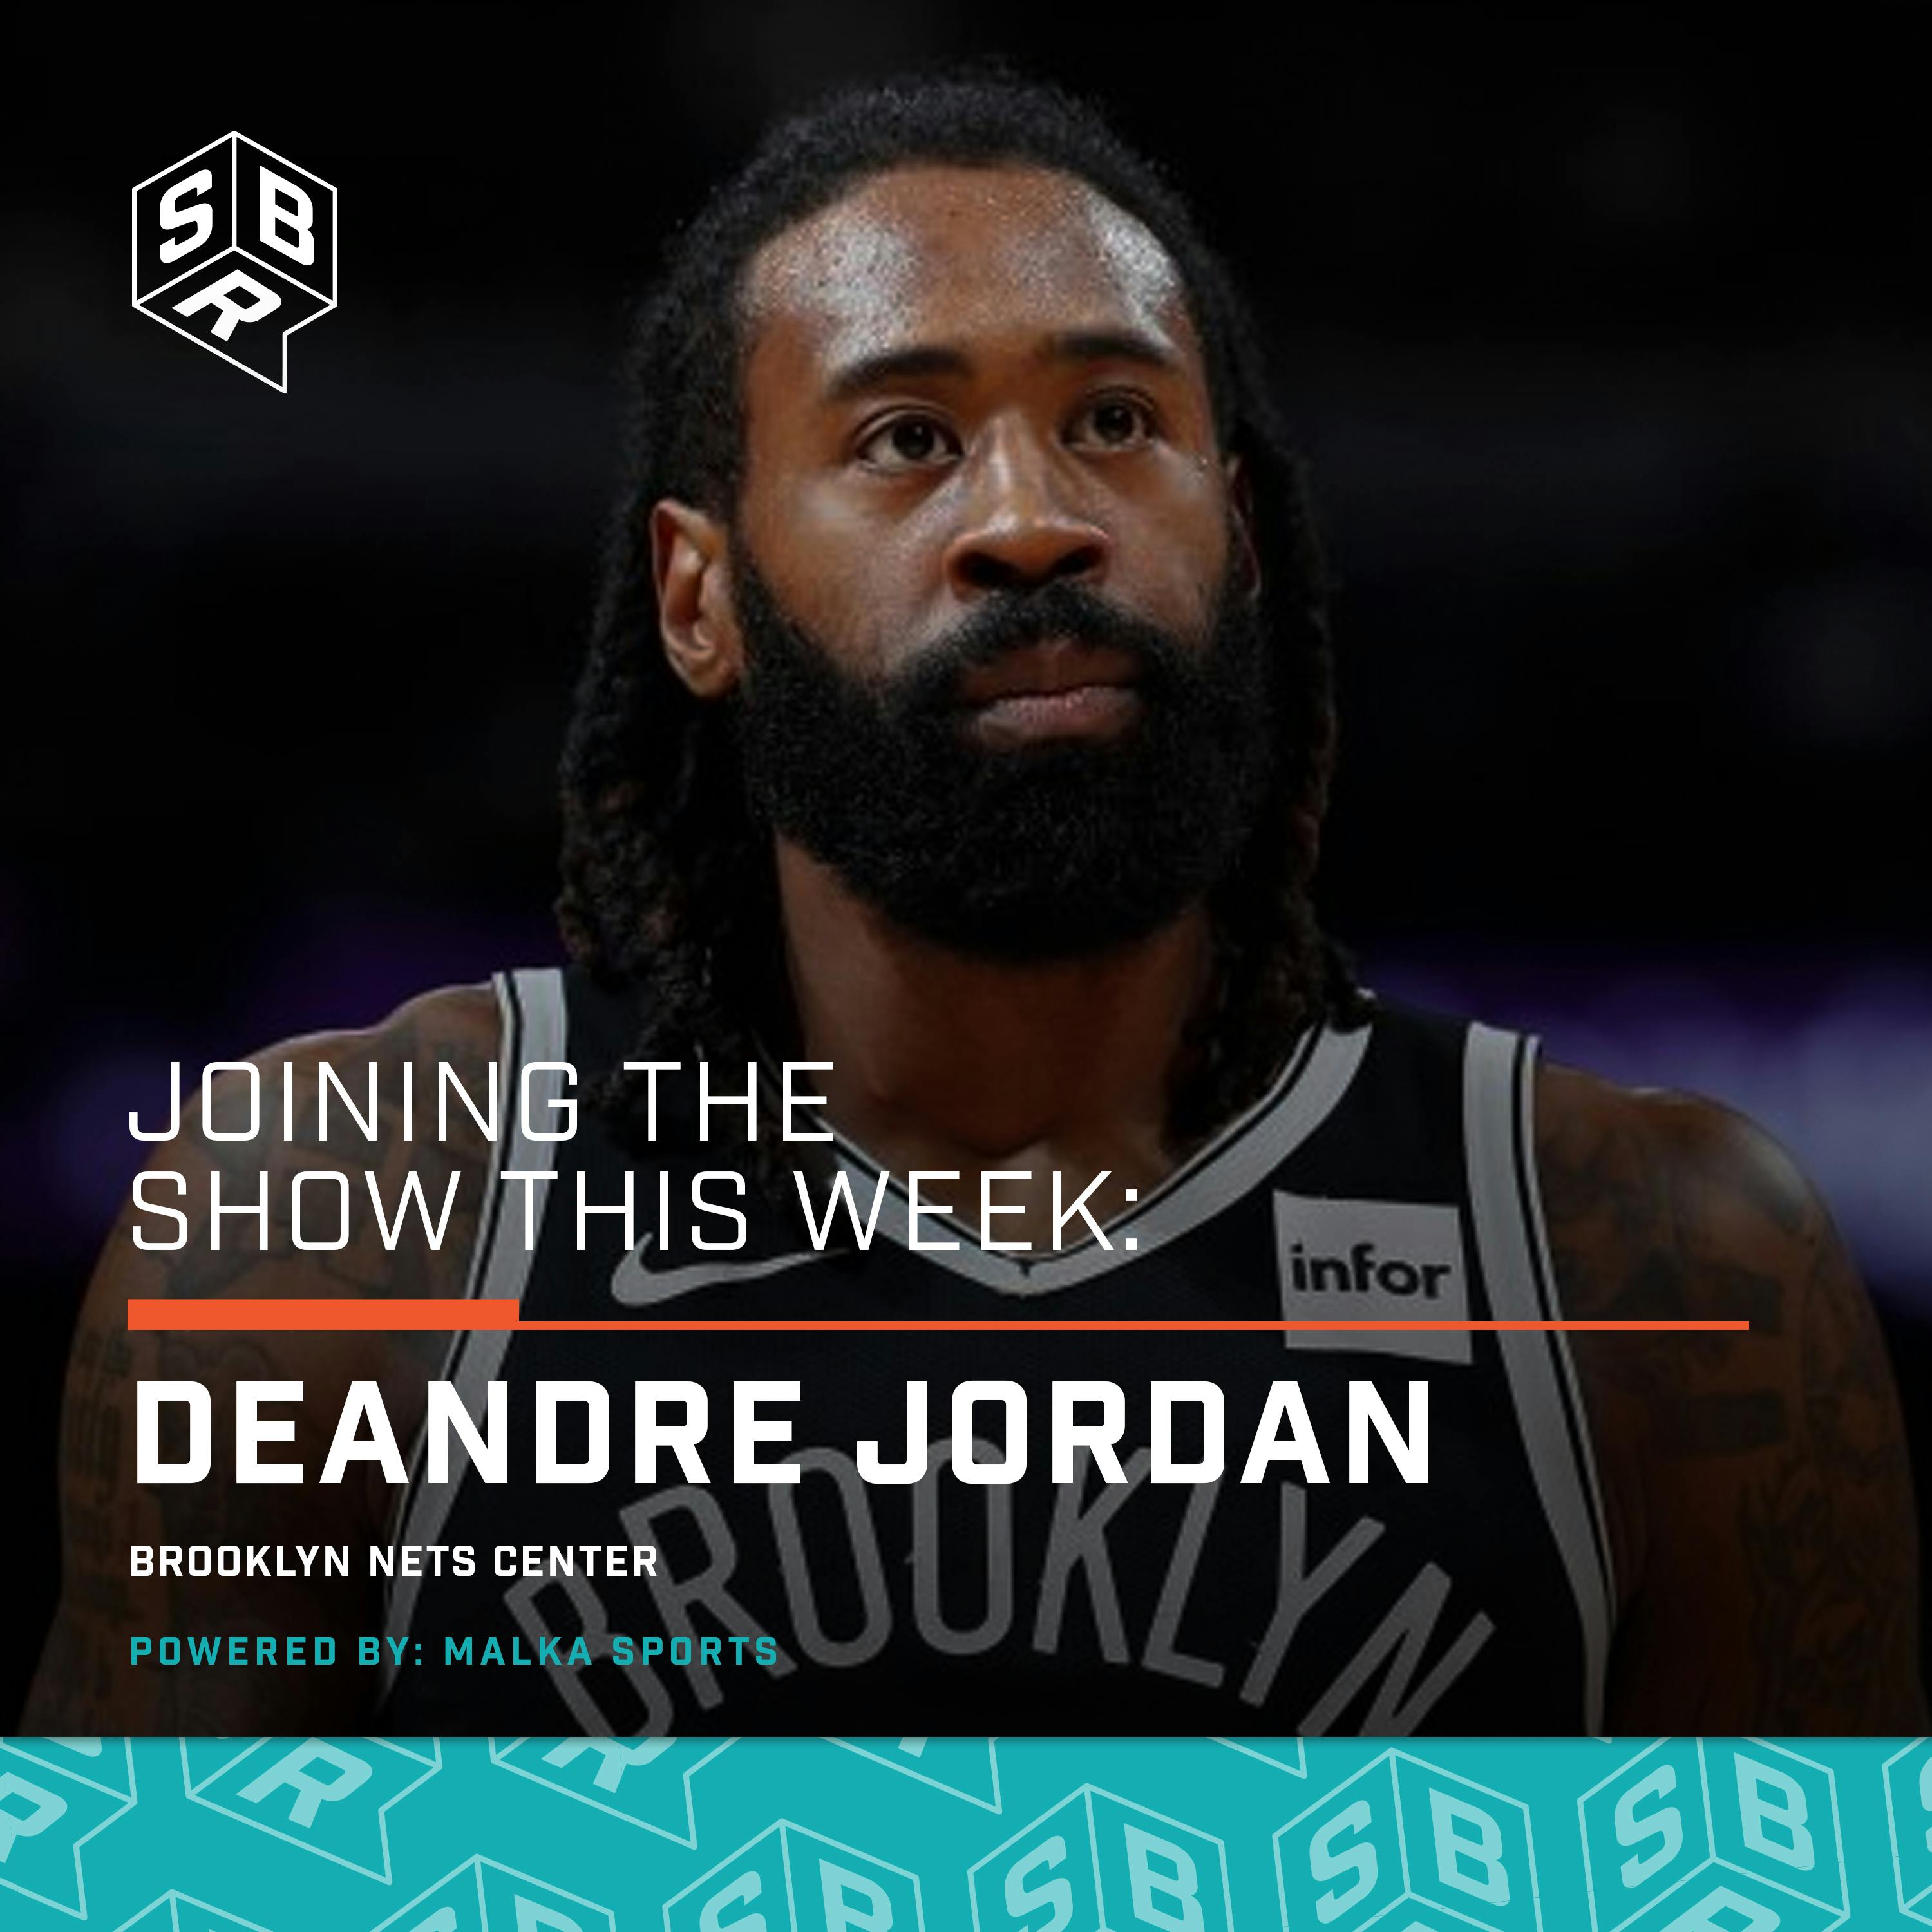 Deandre Jordan (@Deandre), Brooklyn Nets center